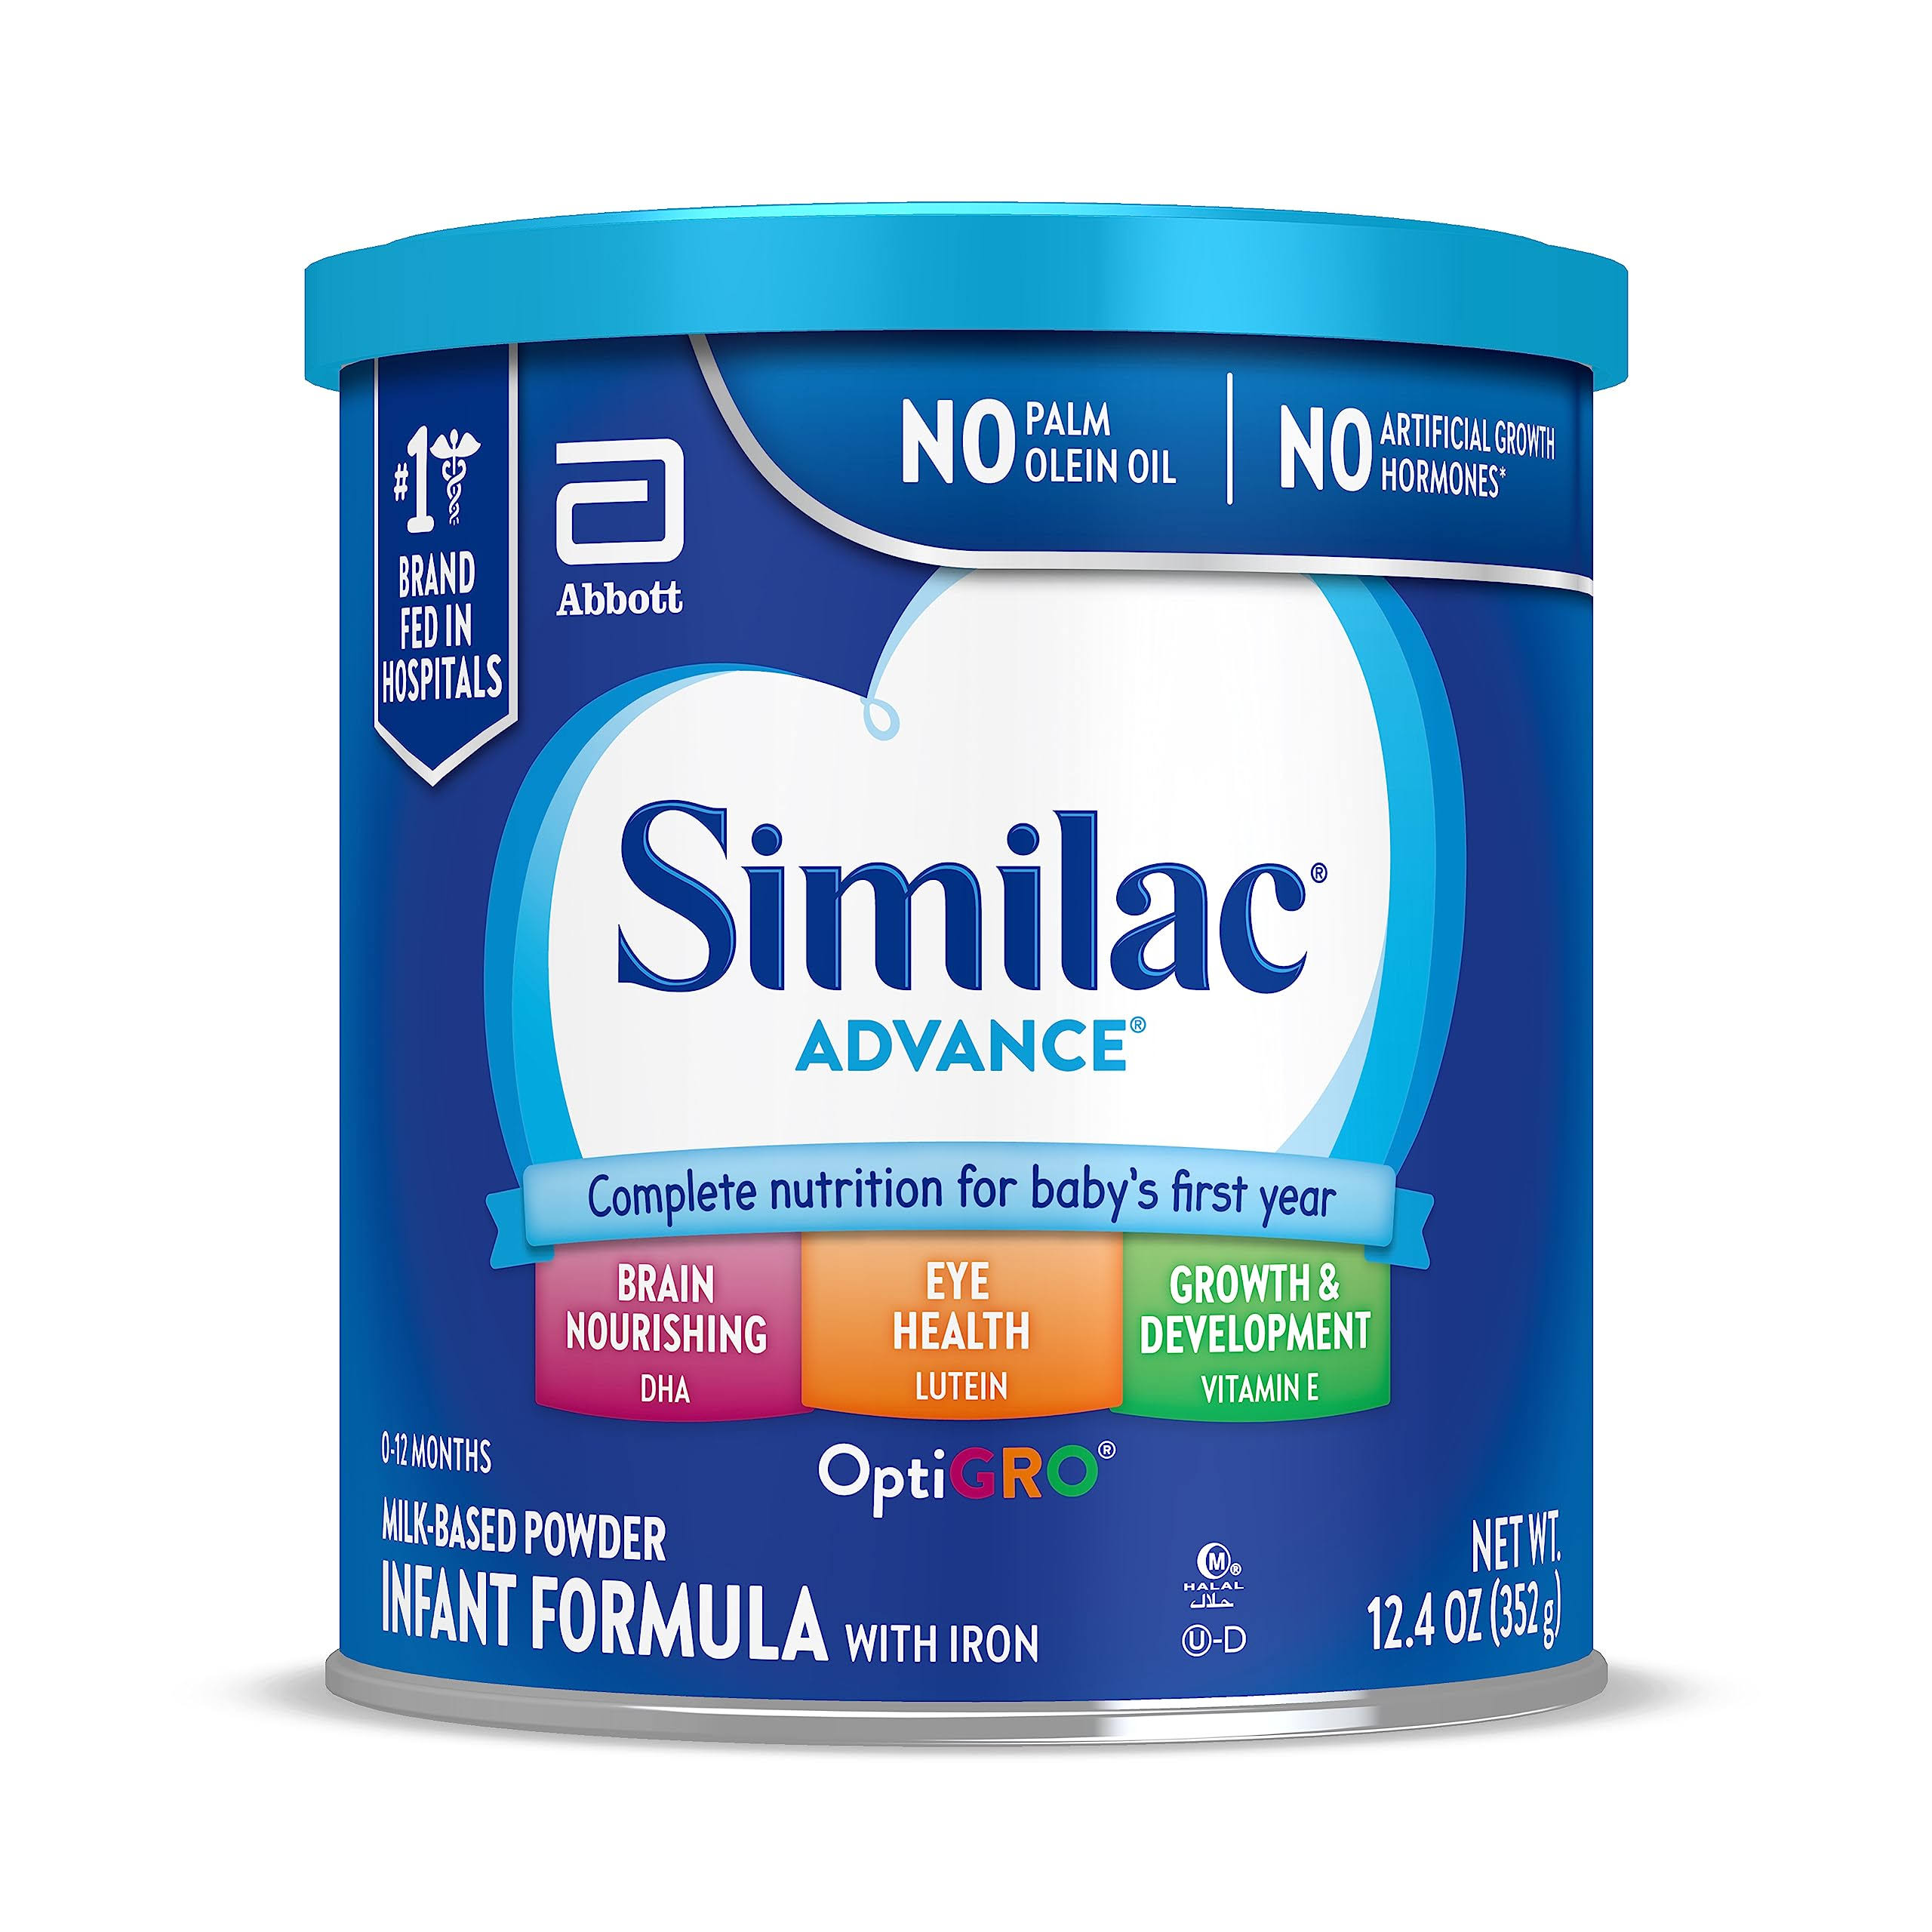 Abbott Similac Advance OptiGro Milk-Based Powder with Iron Infant Formula - 12.4 oz